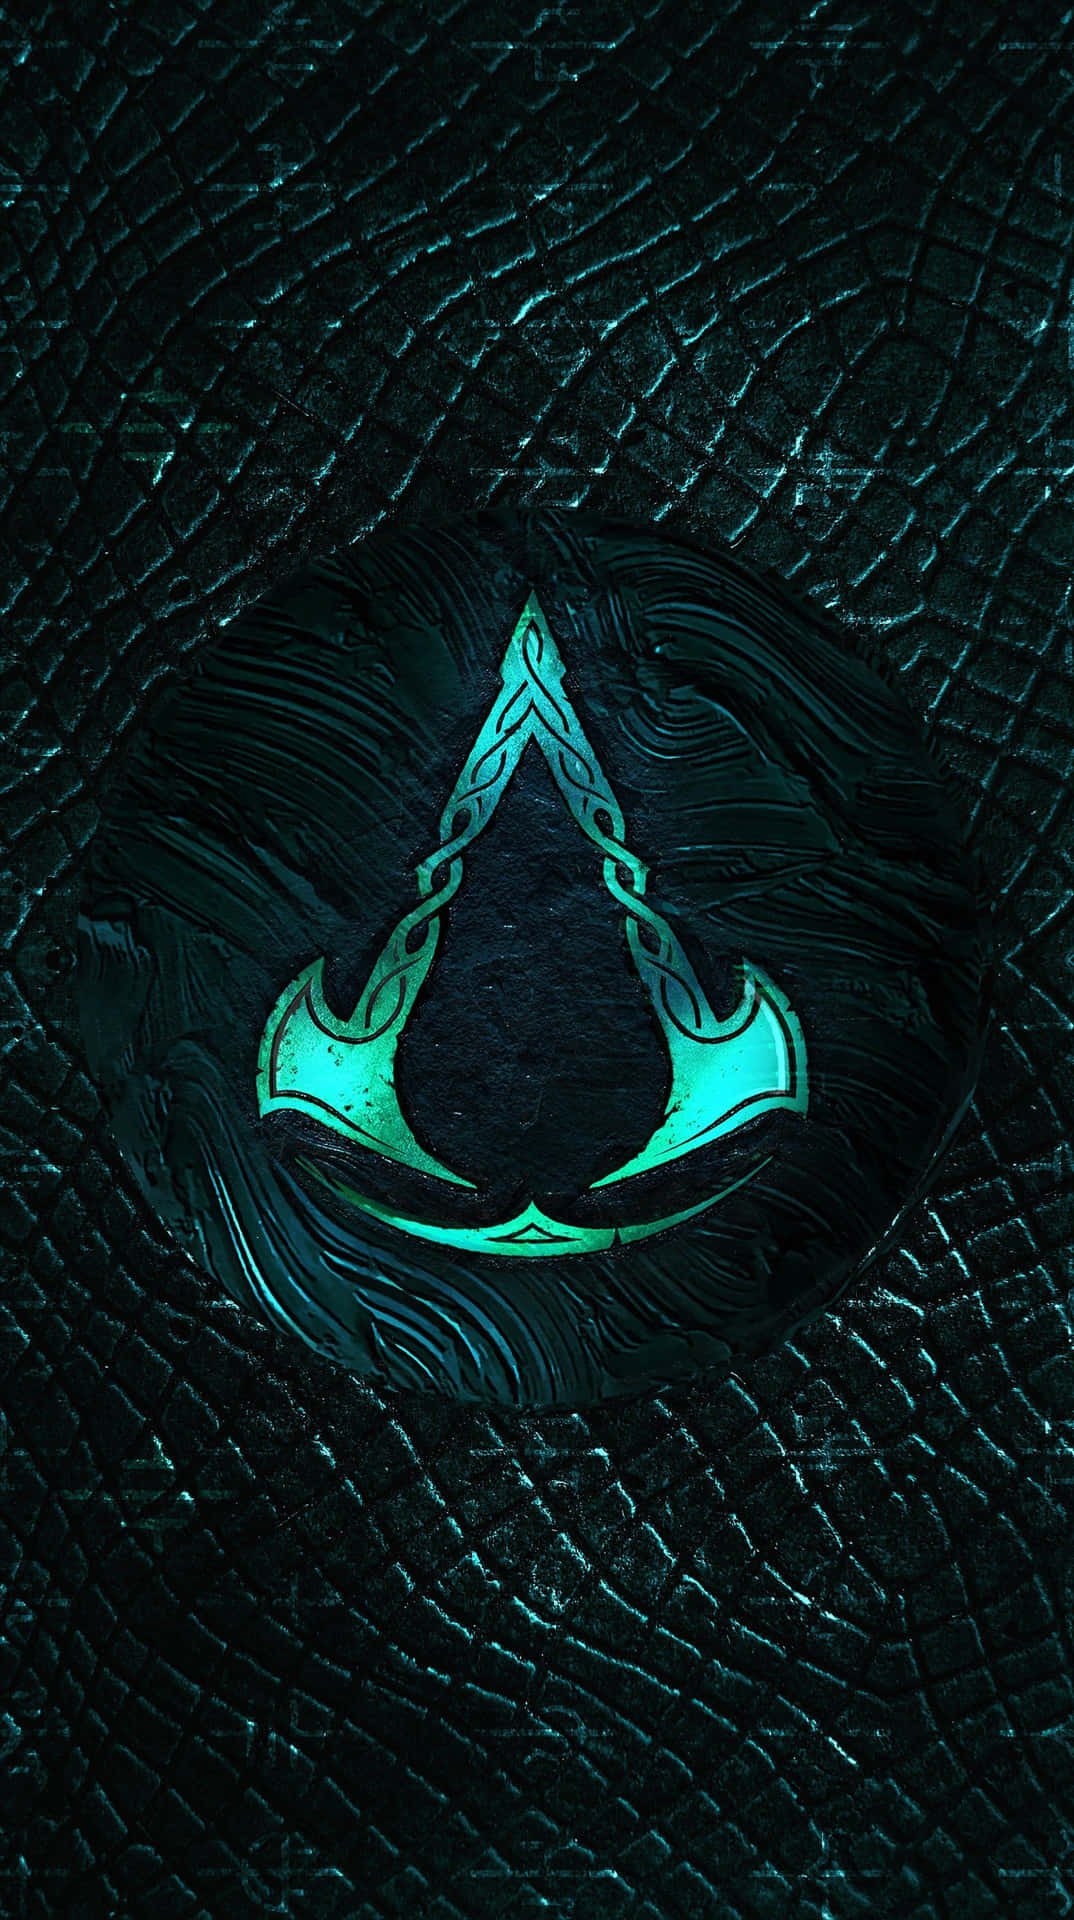 Logotipode Assassin's Creed En Un Fondo Negro Fondo de pantalla